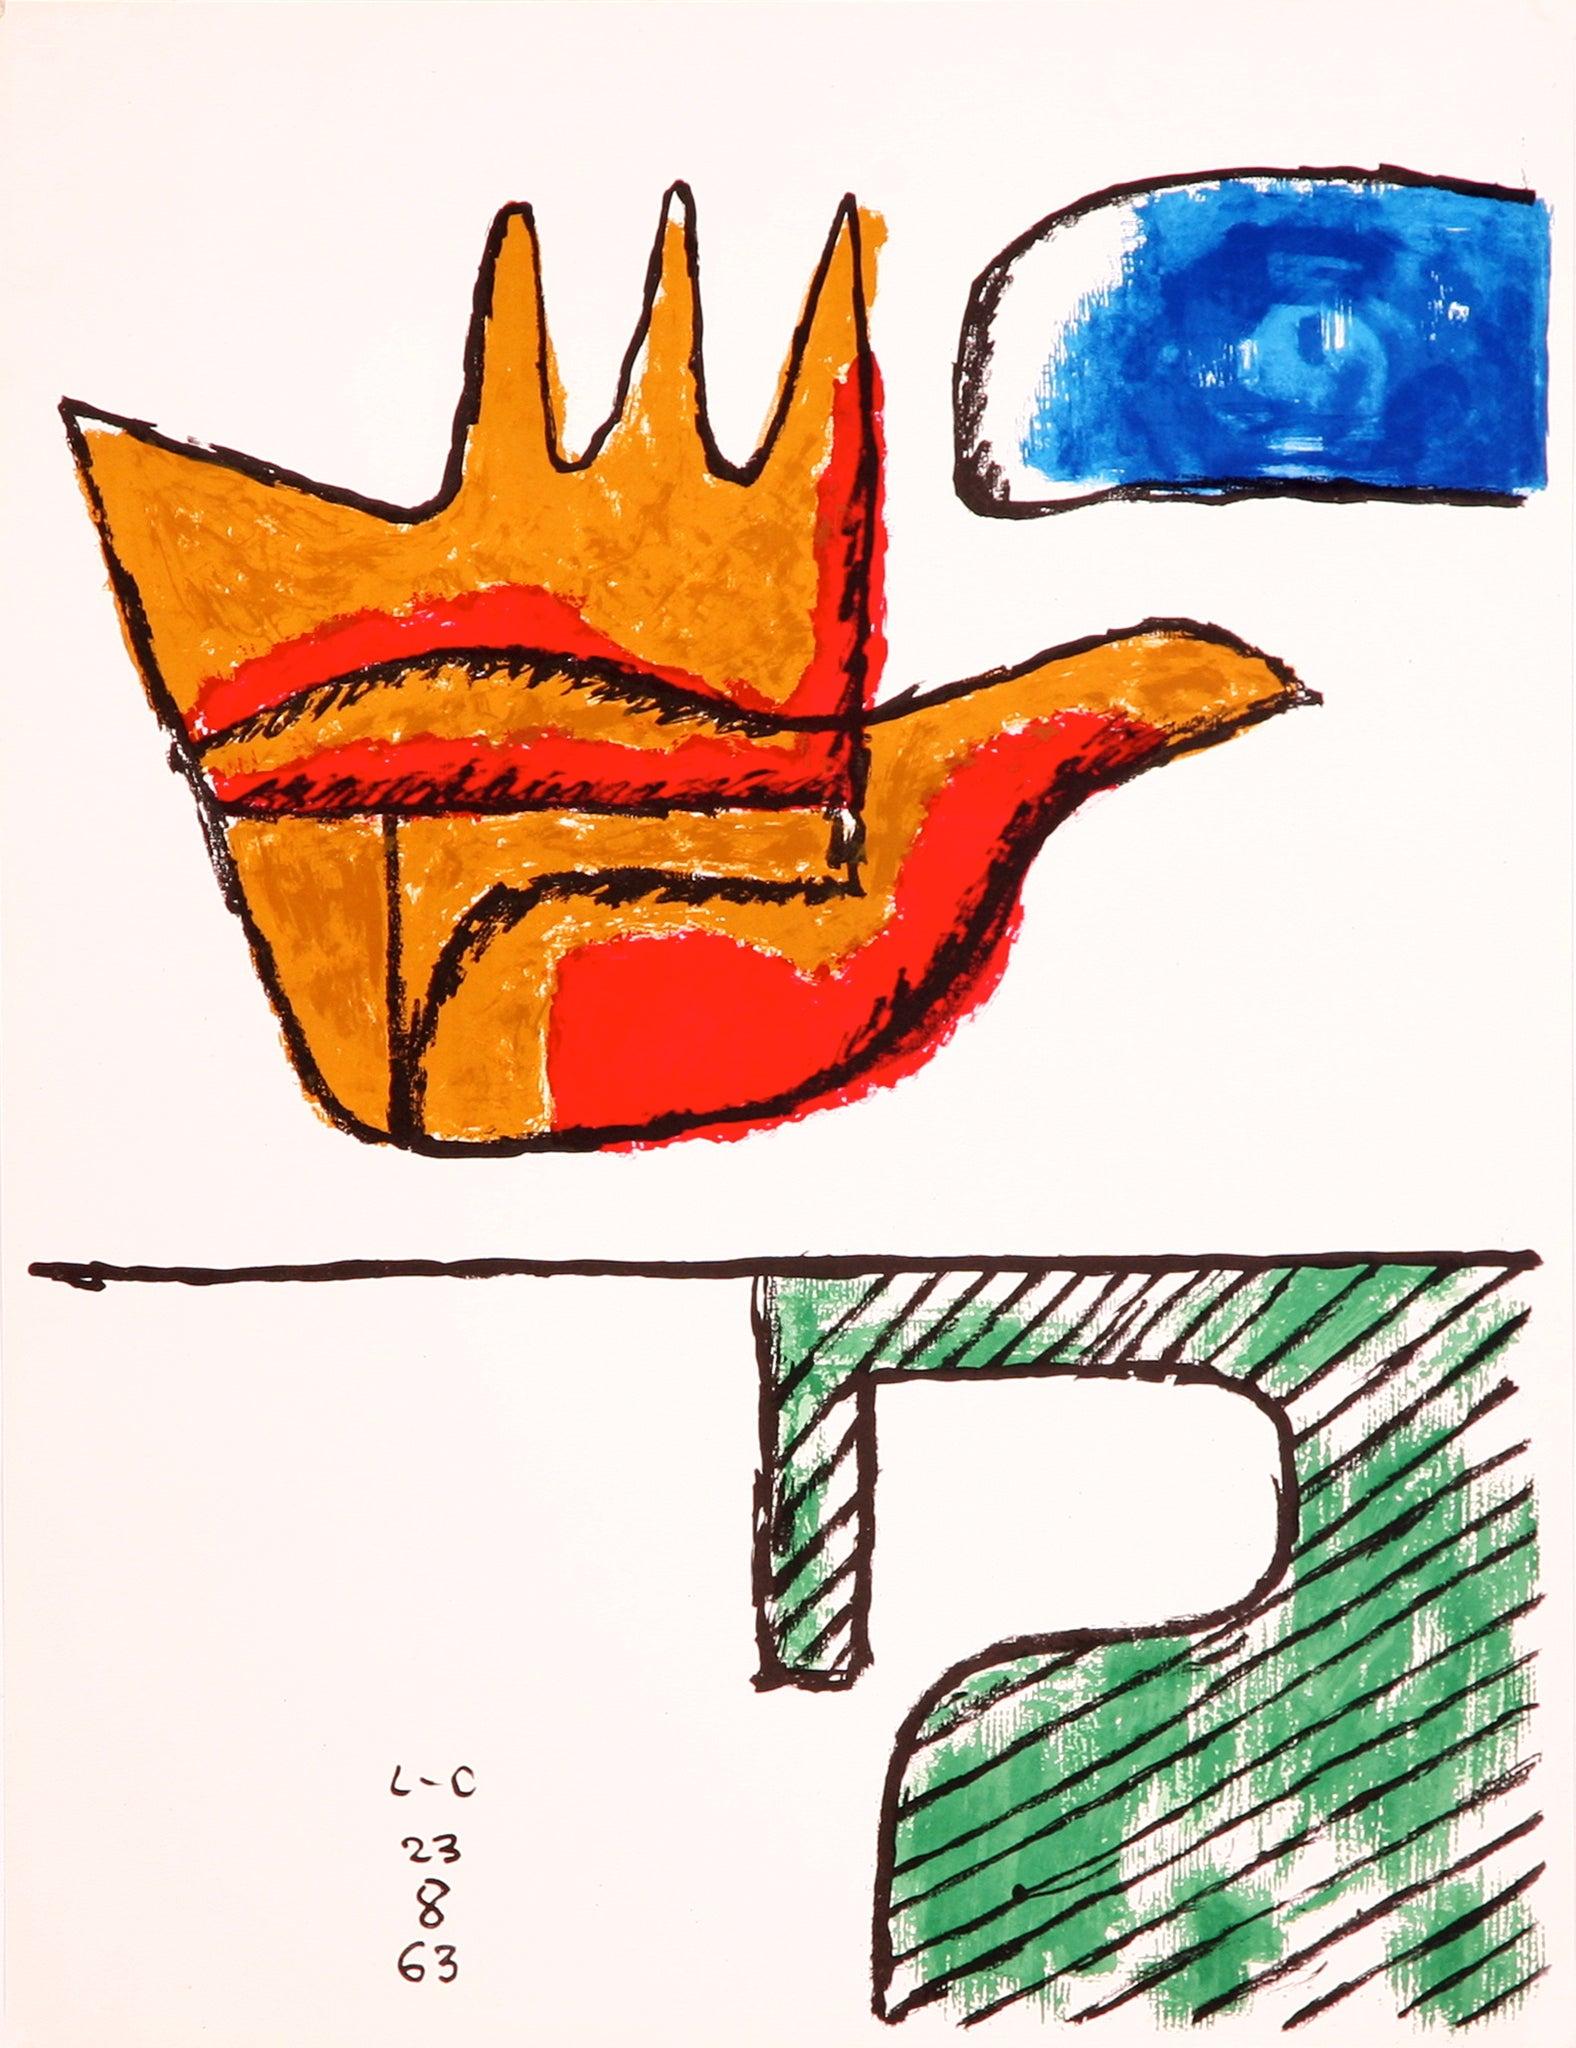 Künstler: Le Corbusier

Medium: Lithographie, signiert und datiert in Stein in einer limitierten Auflage, 1963

Abmessungen: 25.5" x 19.75"

Über

Die offene Hand, ein Symbol der Versöhnung, offen zum Empfangen und zum Geben, ist ein wiederkehrendes